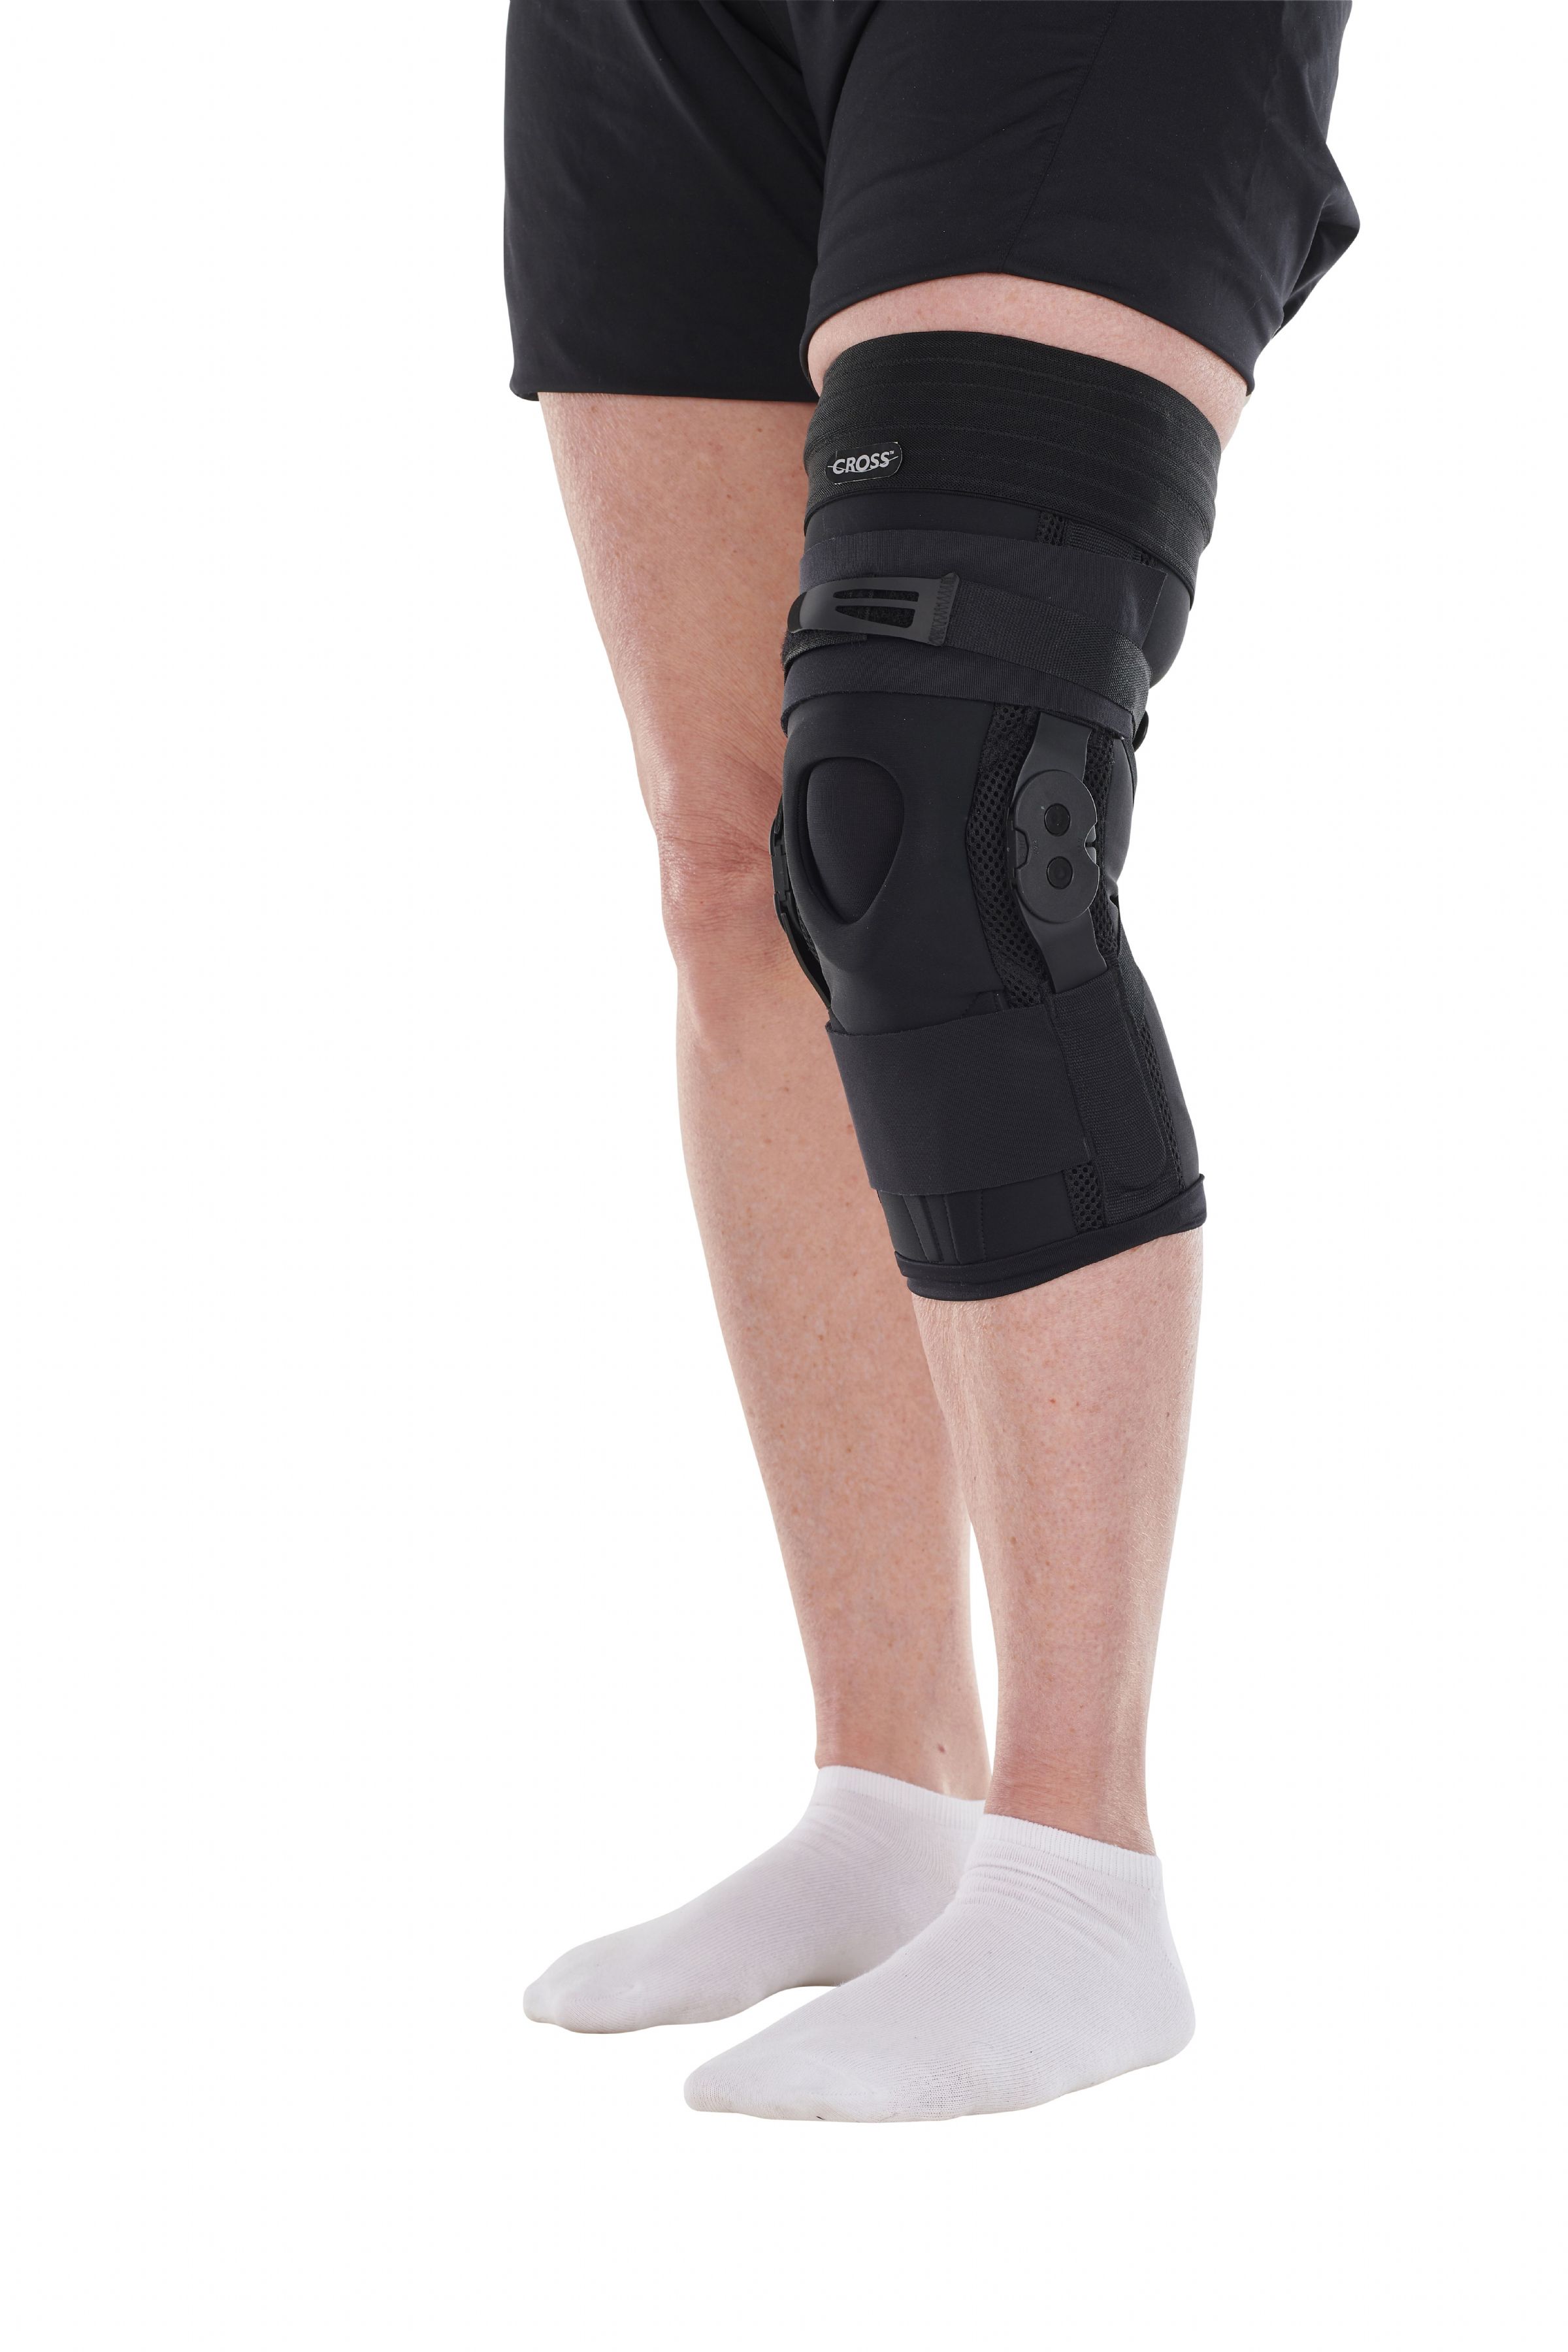 Cross Hyper Extension Knee Orthosis Sleeve